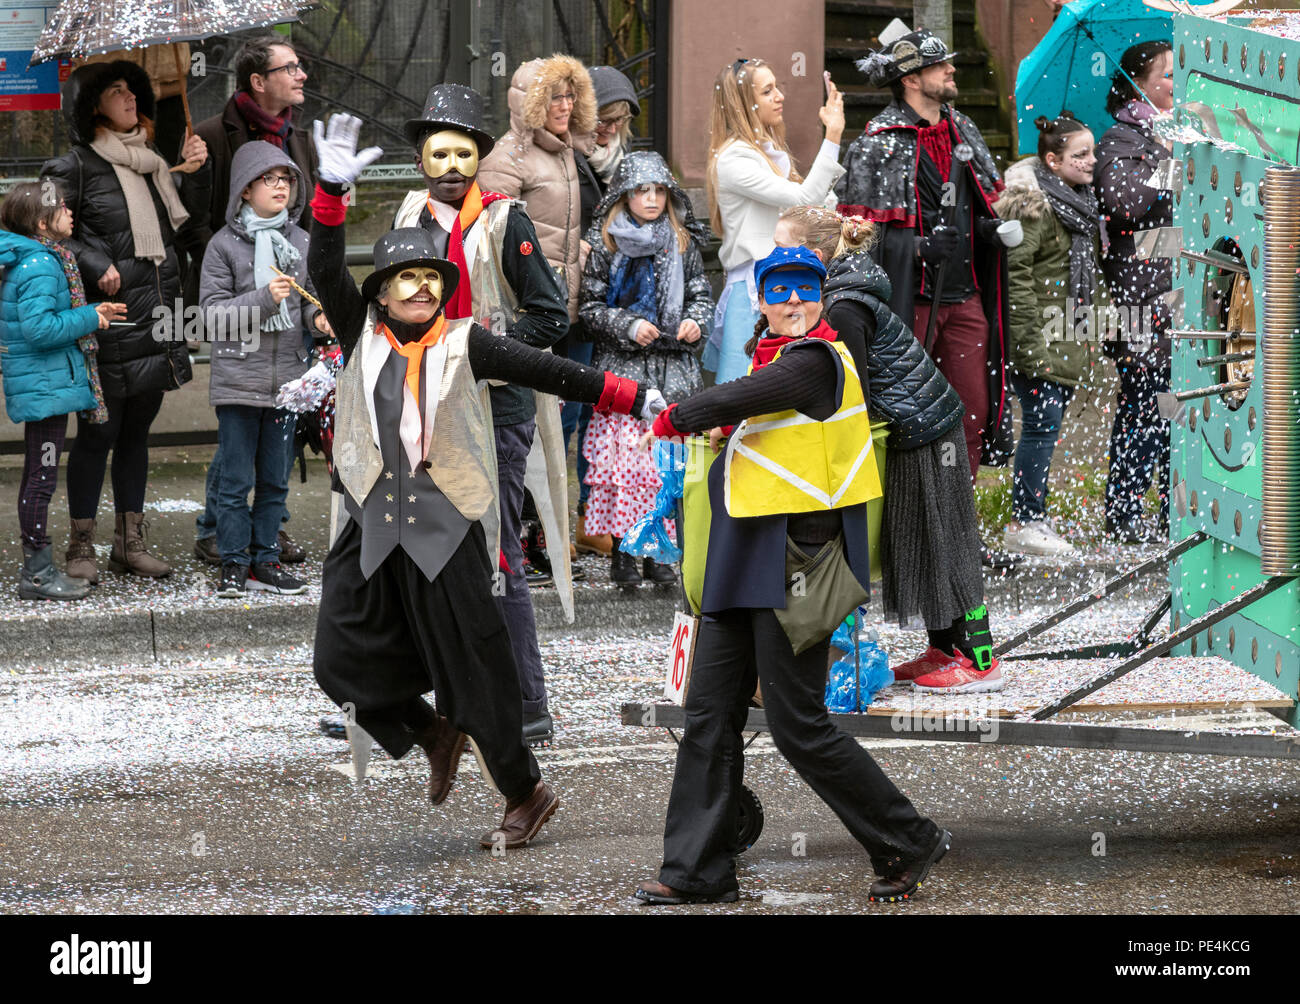 Kostümierte Menschen, confettis, Karnevalsumzug in Straßburg, Elsass, Frankreich, Europa, Stockfoto